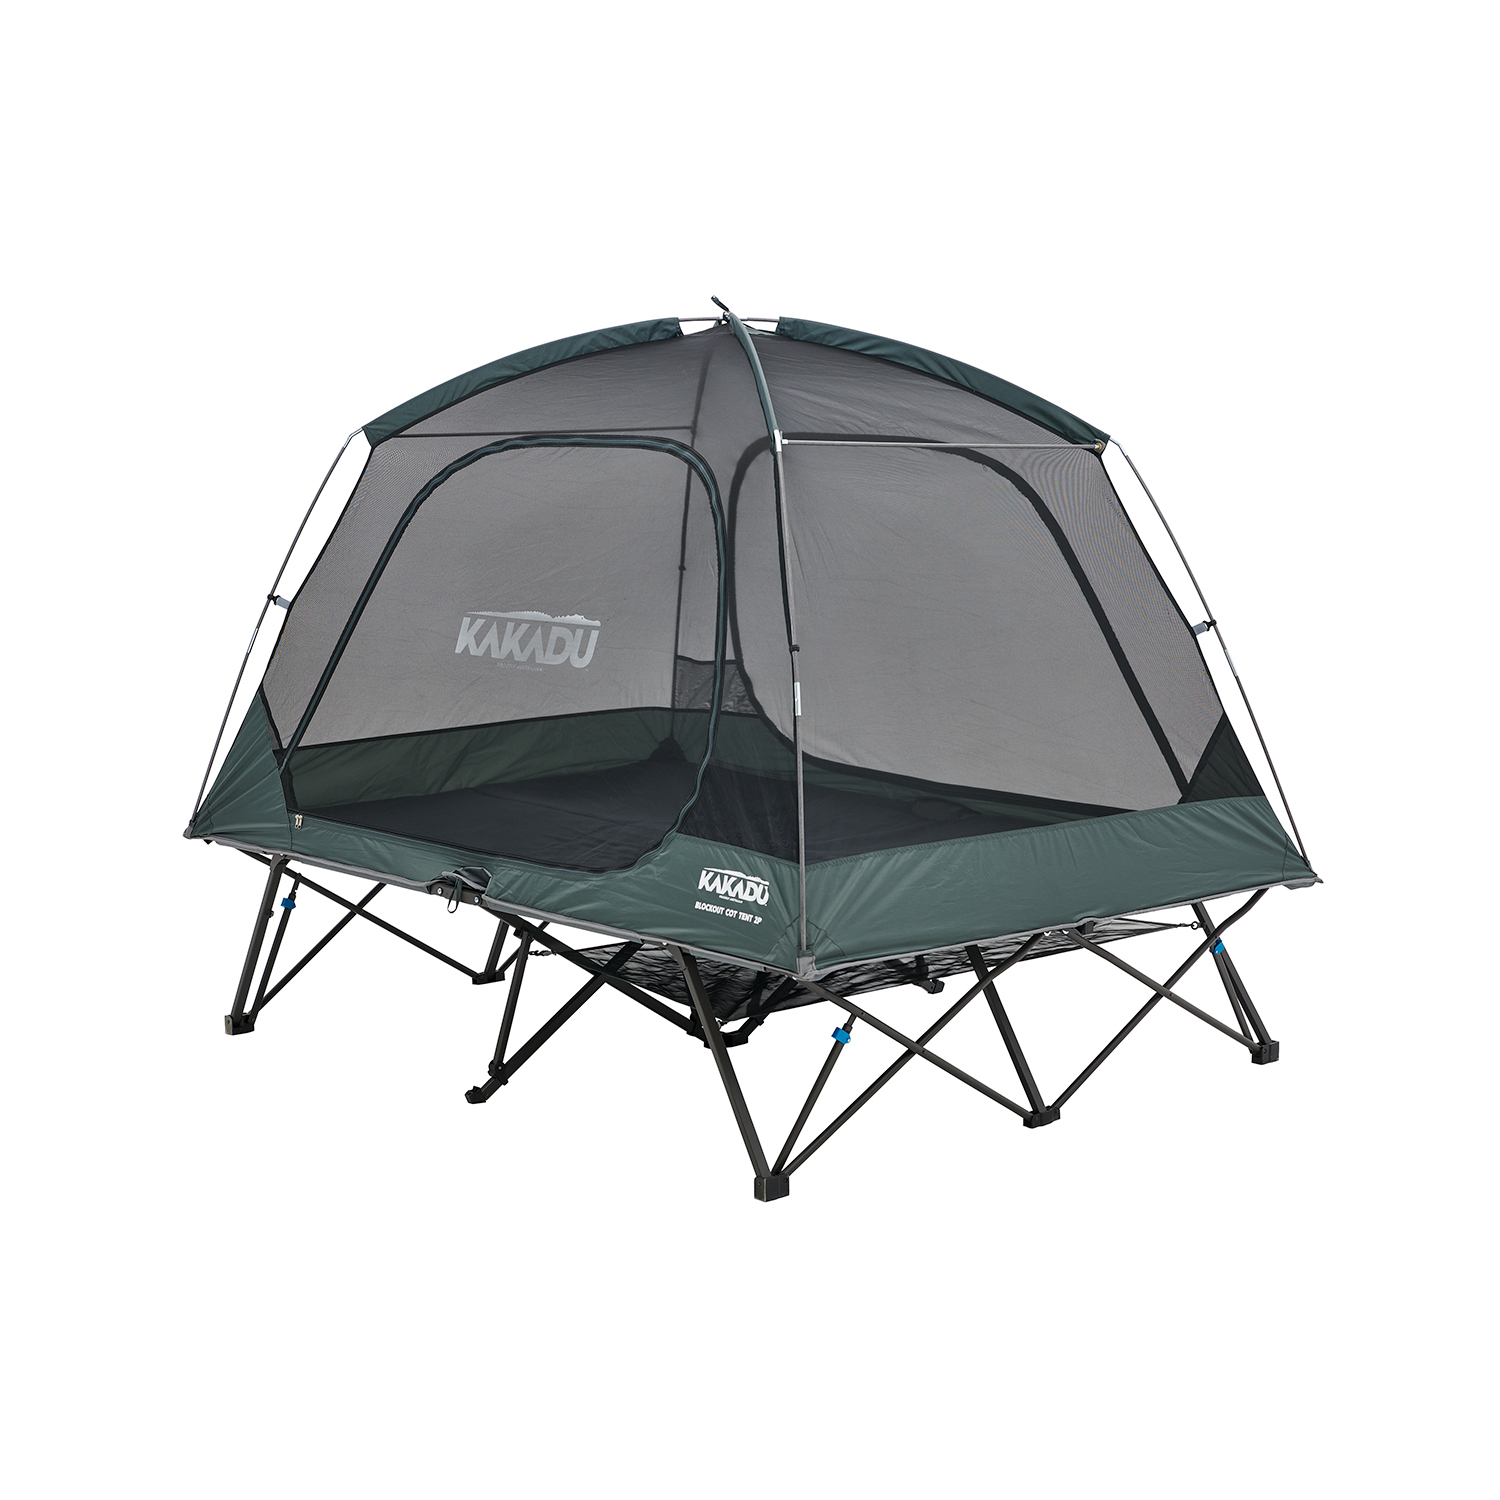 BlockOut Cot Tent 2P